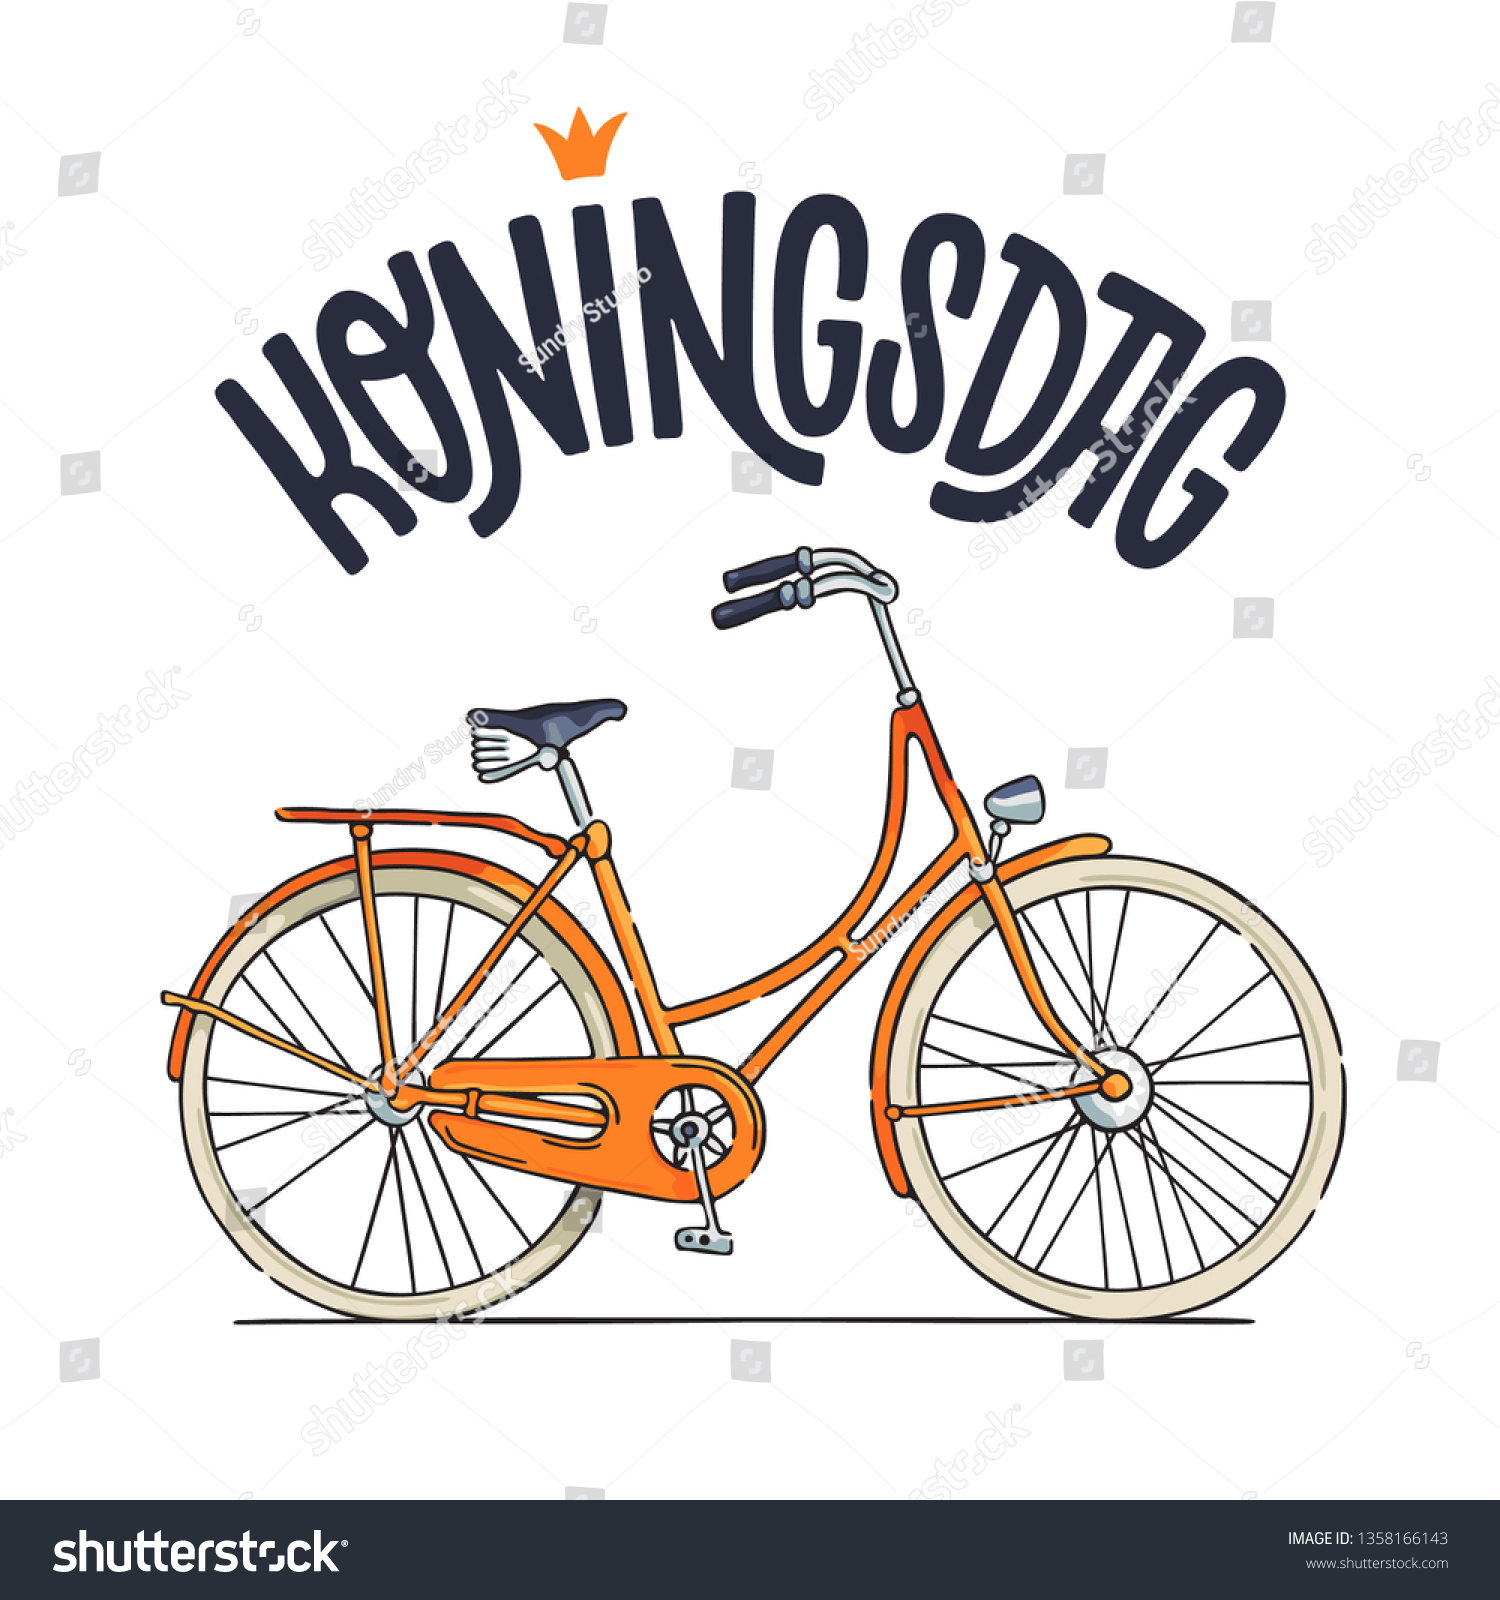 オレンジ色の自転車と手書きのkoningsdagデザインテンプレート オランダの祝日 ポスター カード 招待状 カバー チラシなどに使用できます のベクター画像素材 ロイヤリティフリー